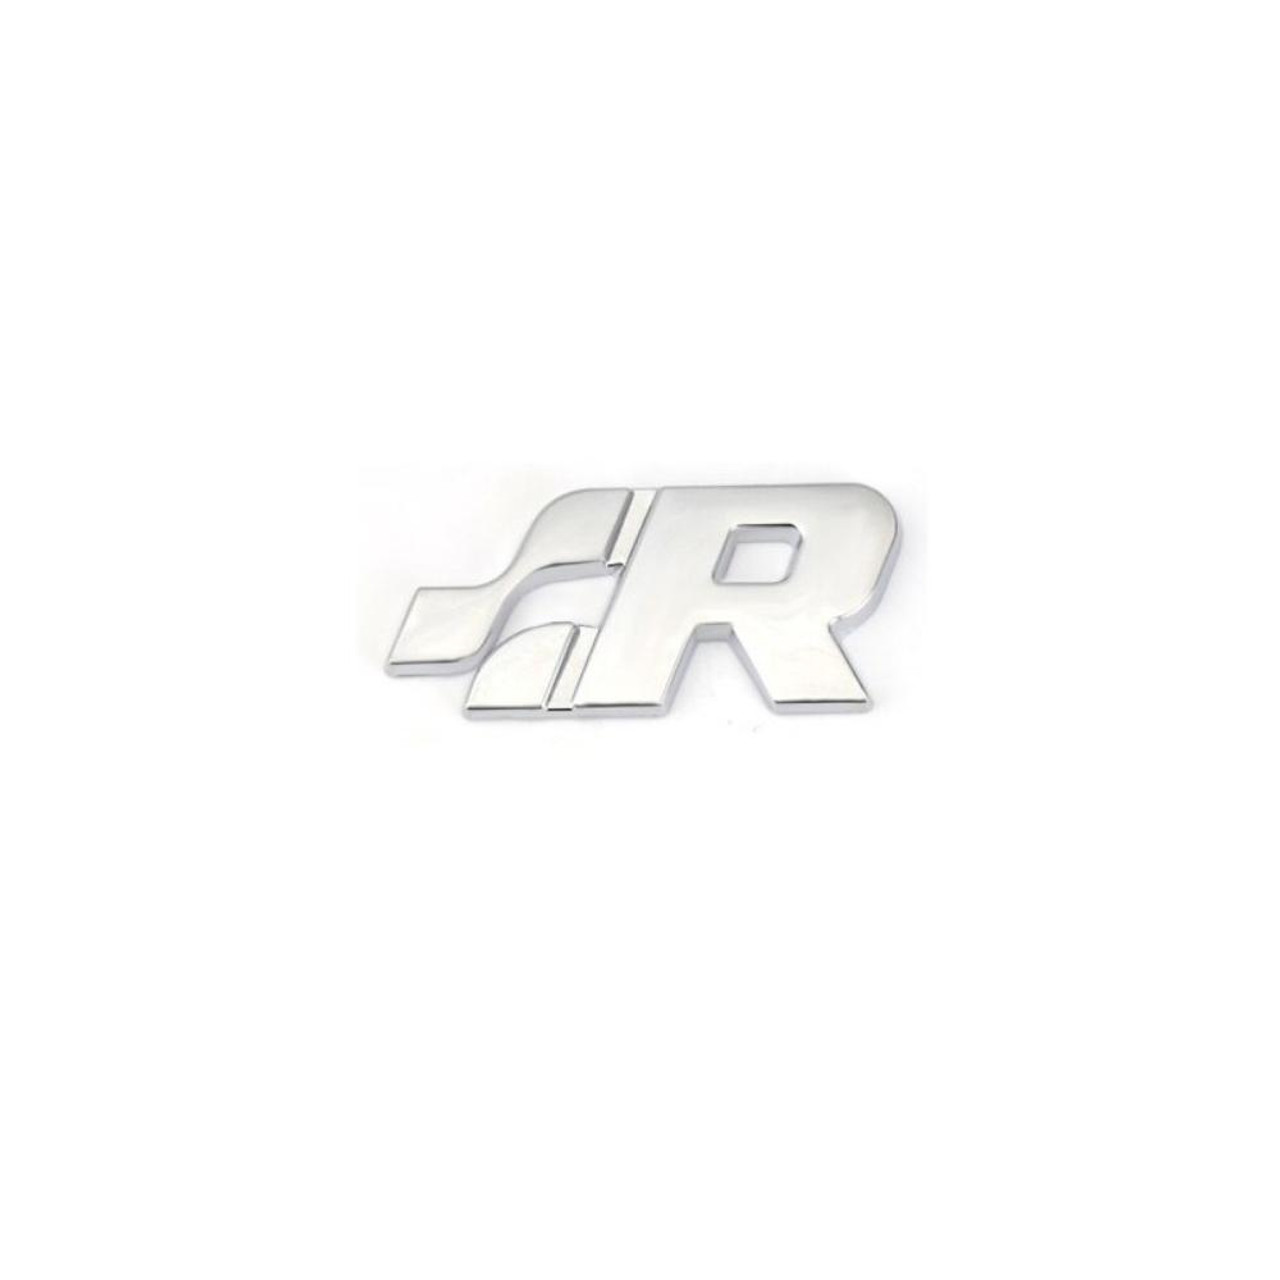 ⋙ Buy Vw Rline R Line Logo Emblem Badge Fictitious R32 !